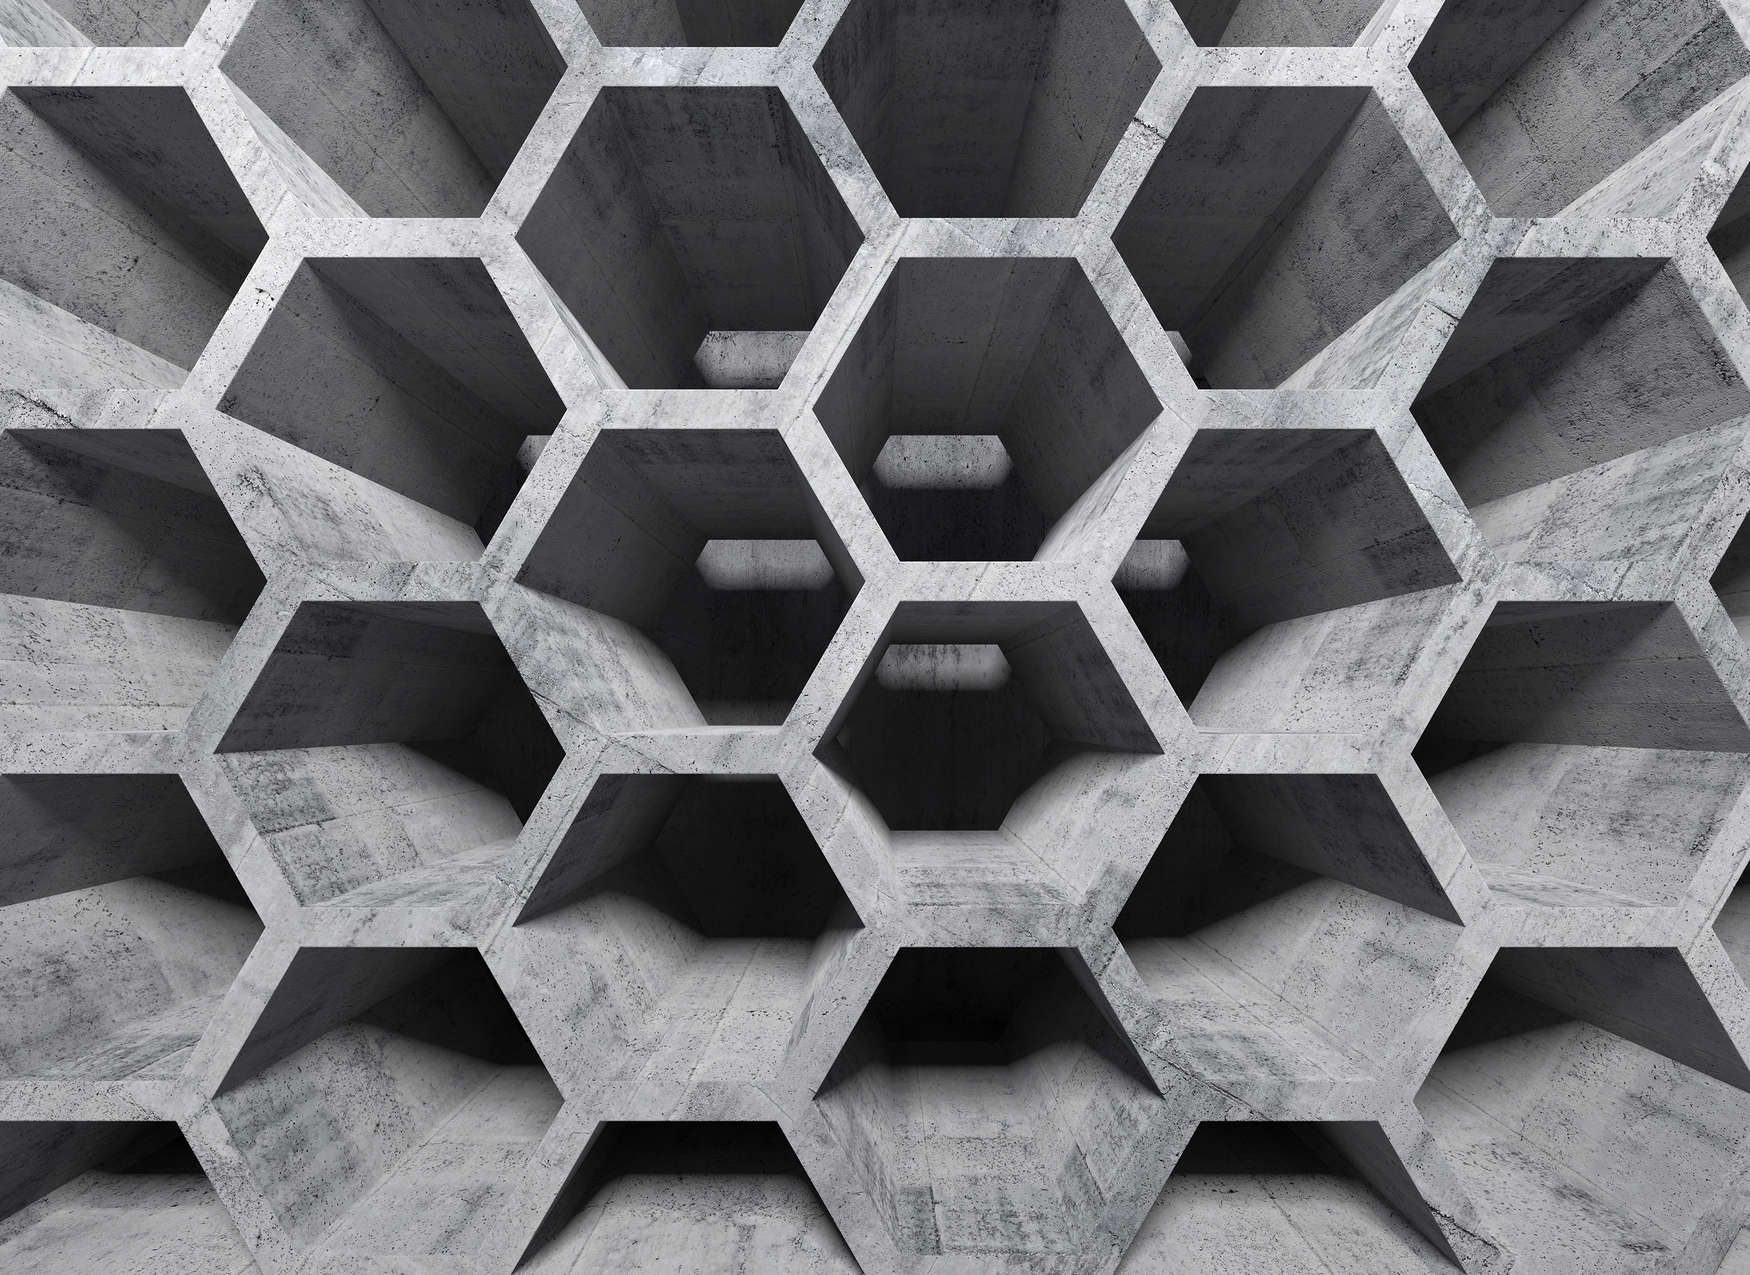             Motivo a nido d'ape effetto 3D con effetto cemento - Grigio
        